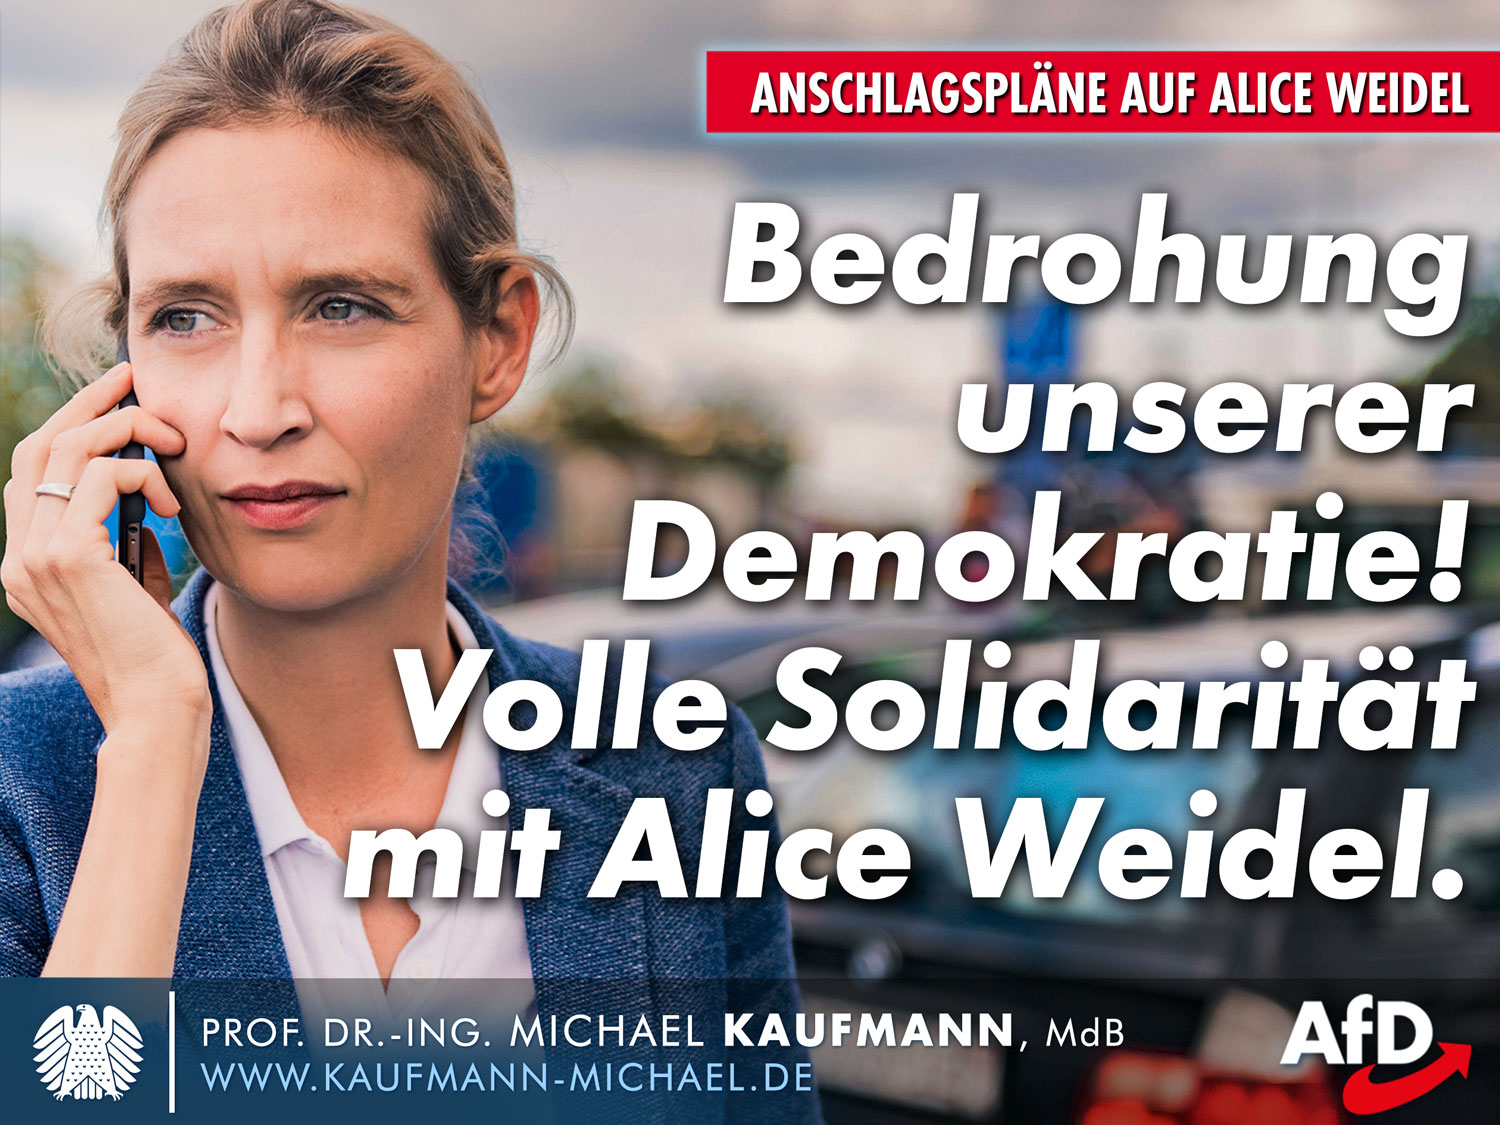 Anschlagspläne auf Alice Weidel: Bedrohung unserer Demokratie!